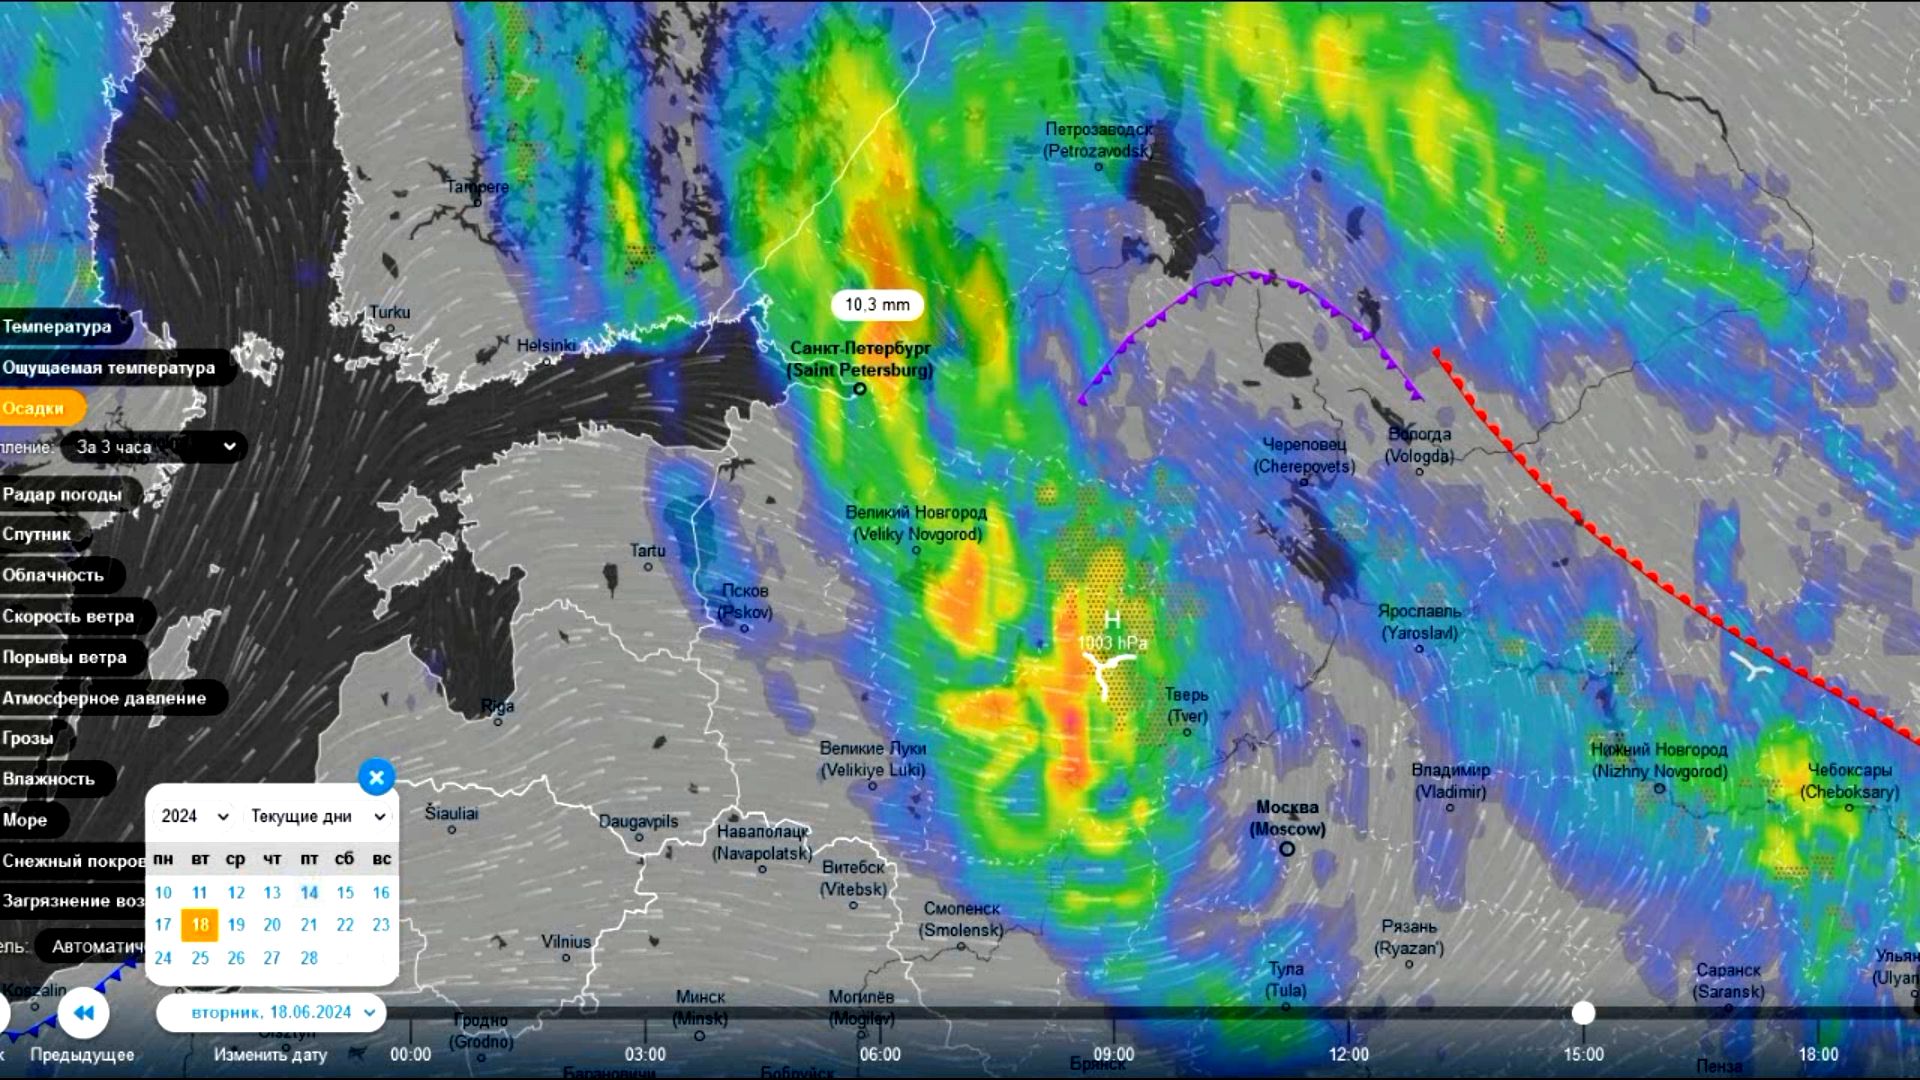 18 июня южный циклон испортит погоду на Северо-западе ЕТР. Прогноз погоды